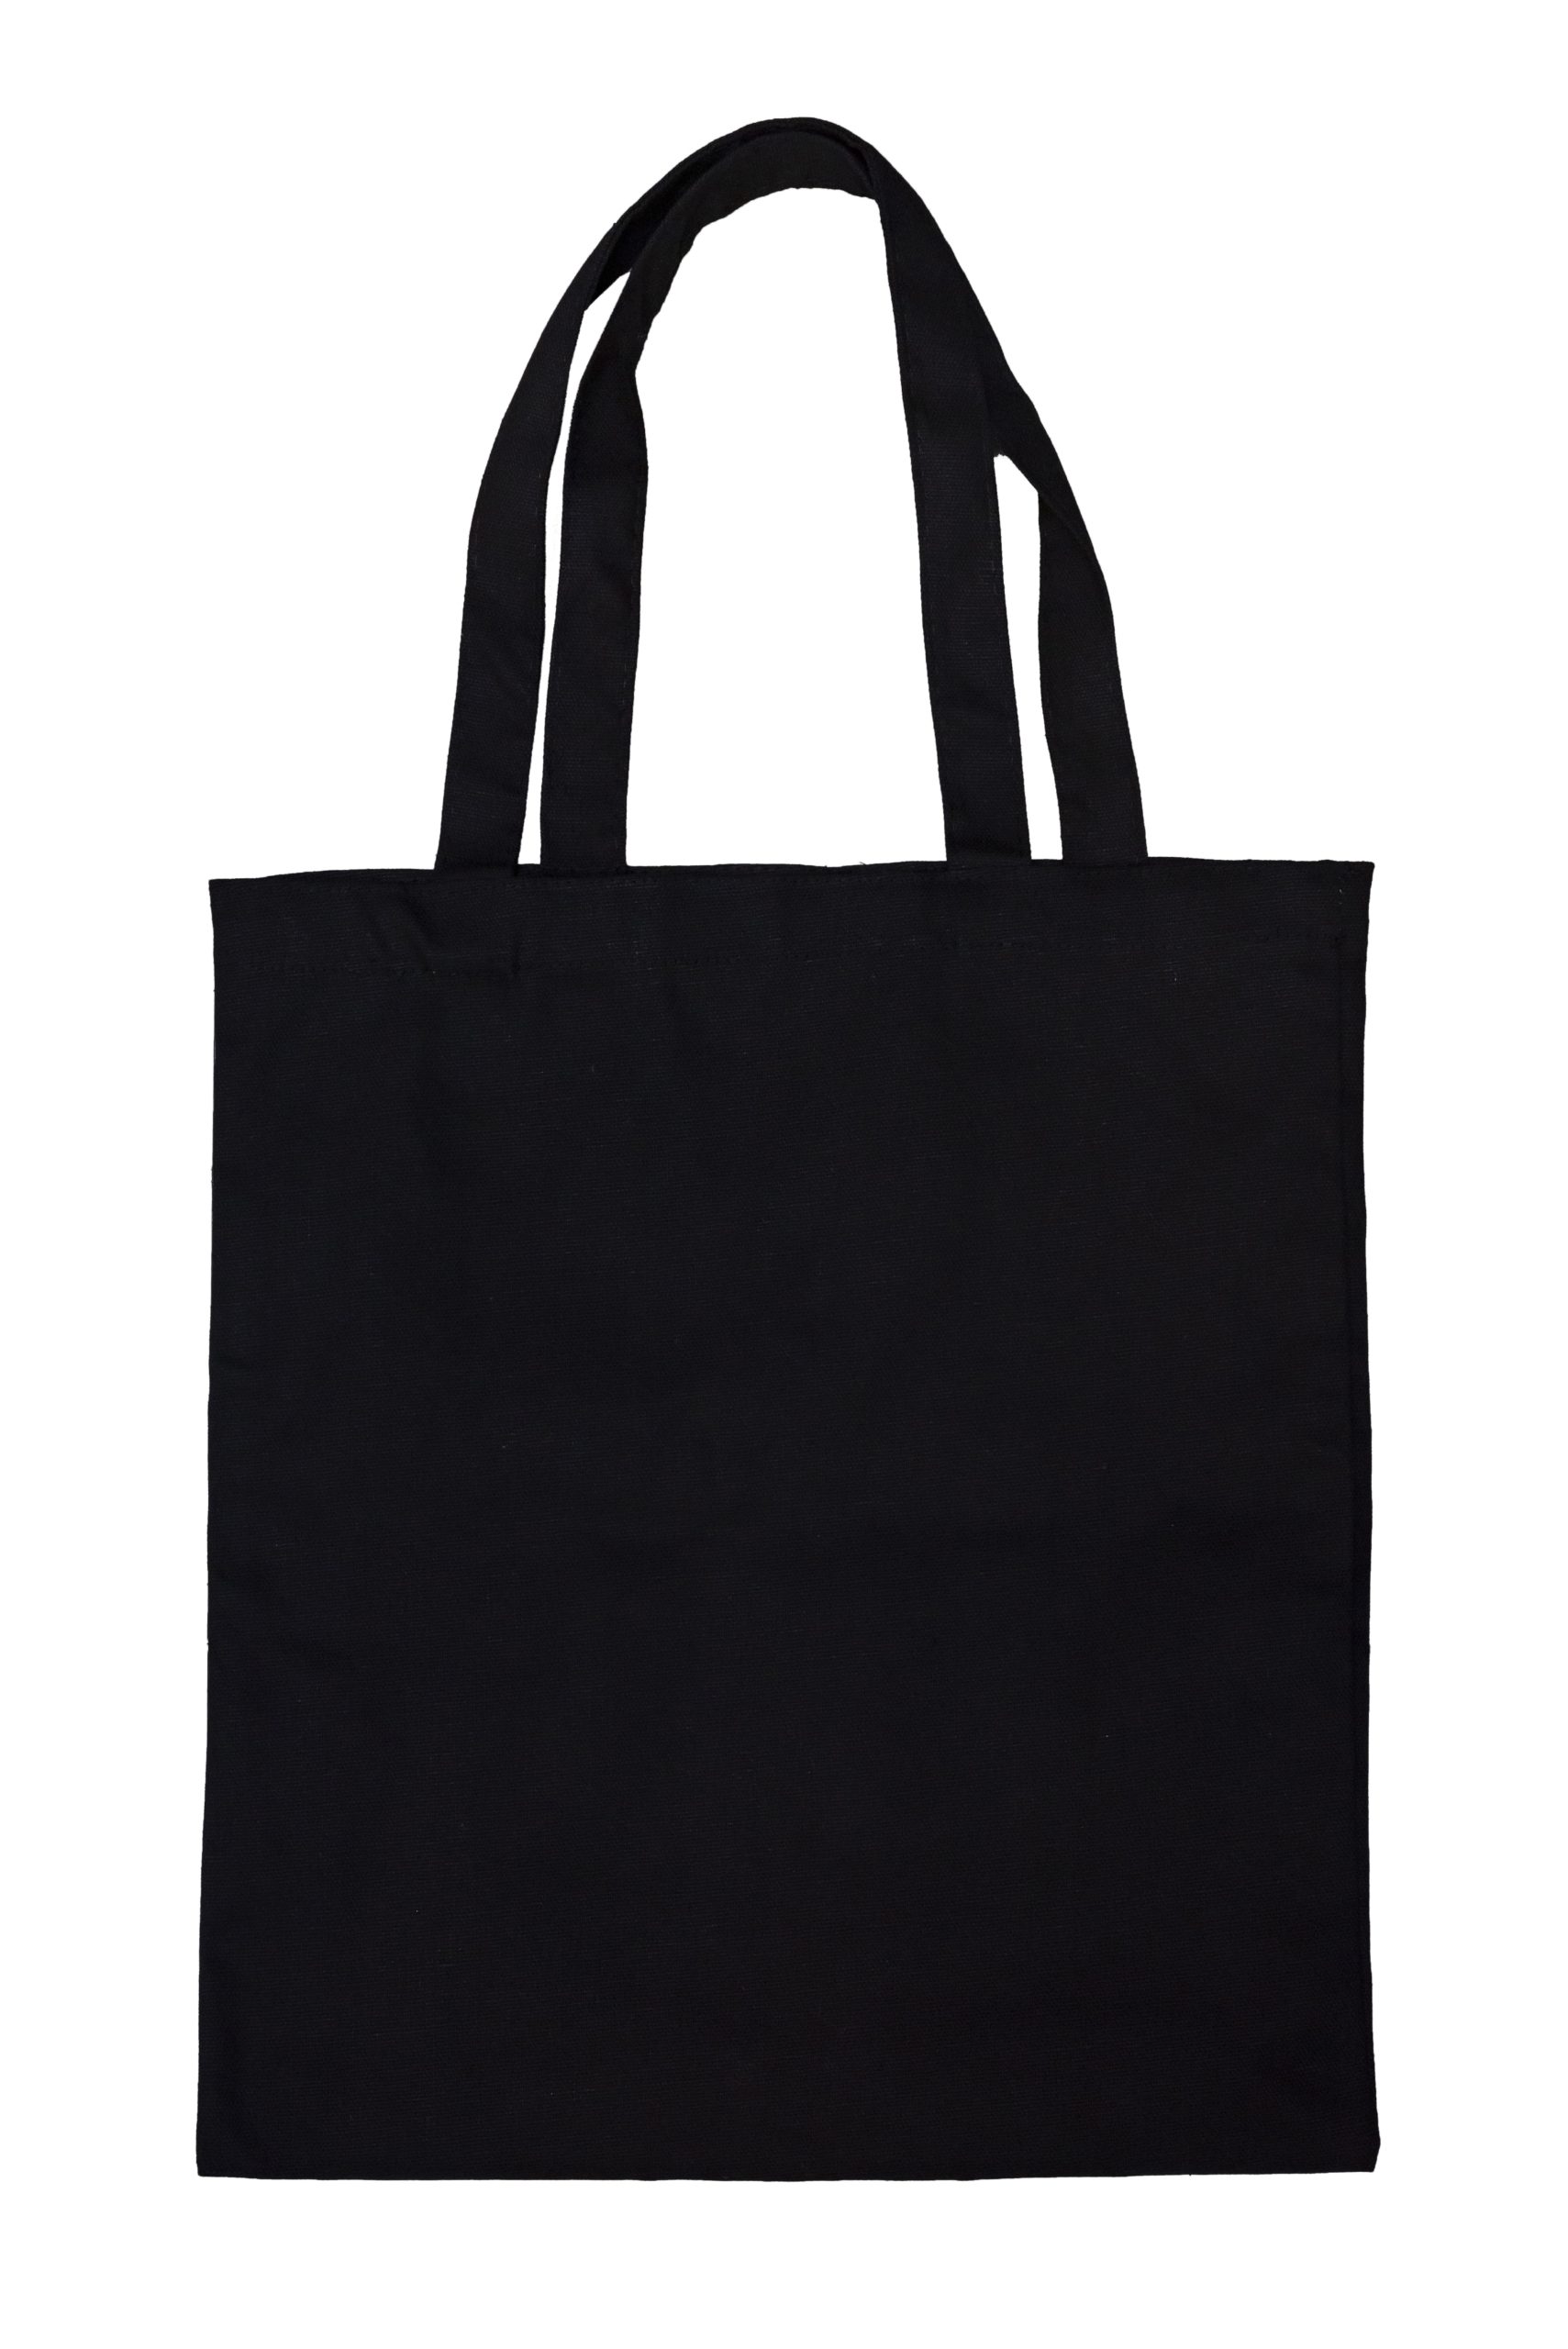 Canvas Bag – South East Shirt And Bag Enterprise Sdn. Bhd.